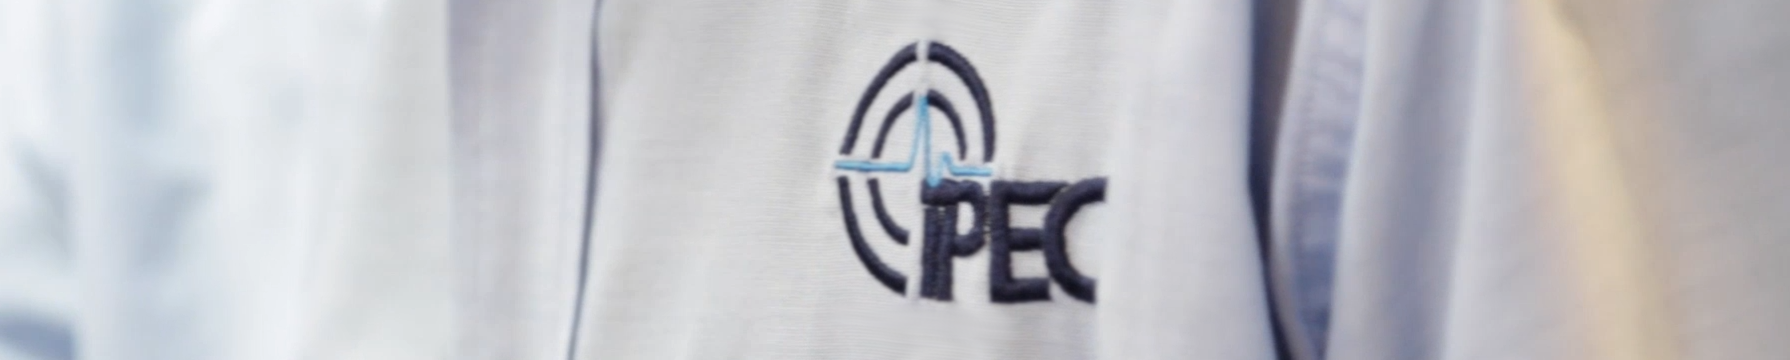 IPEC Support